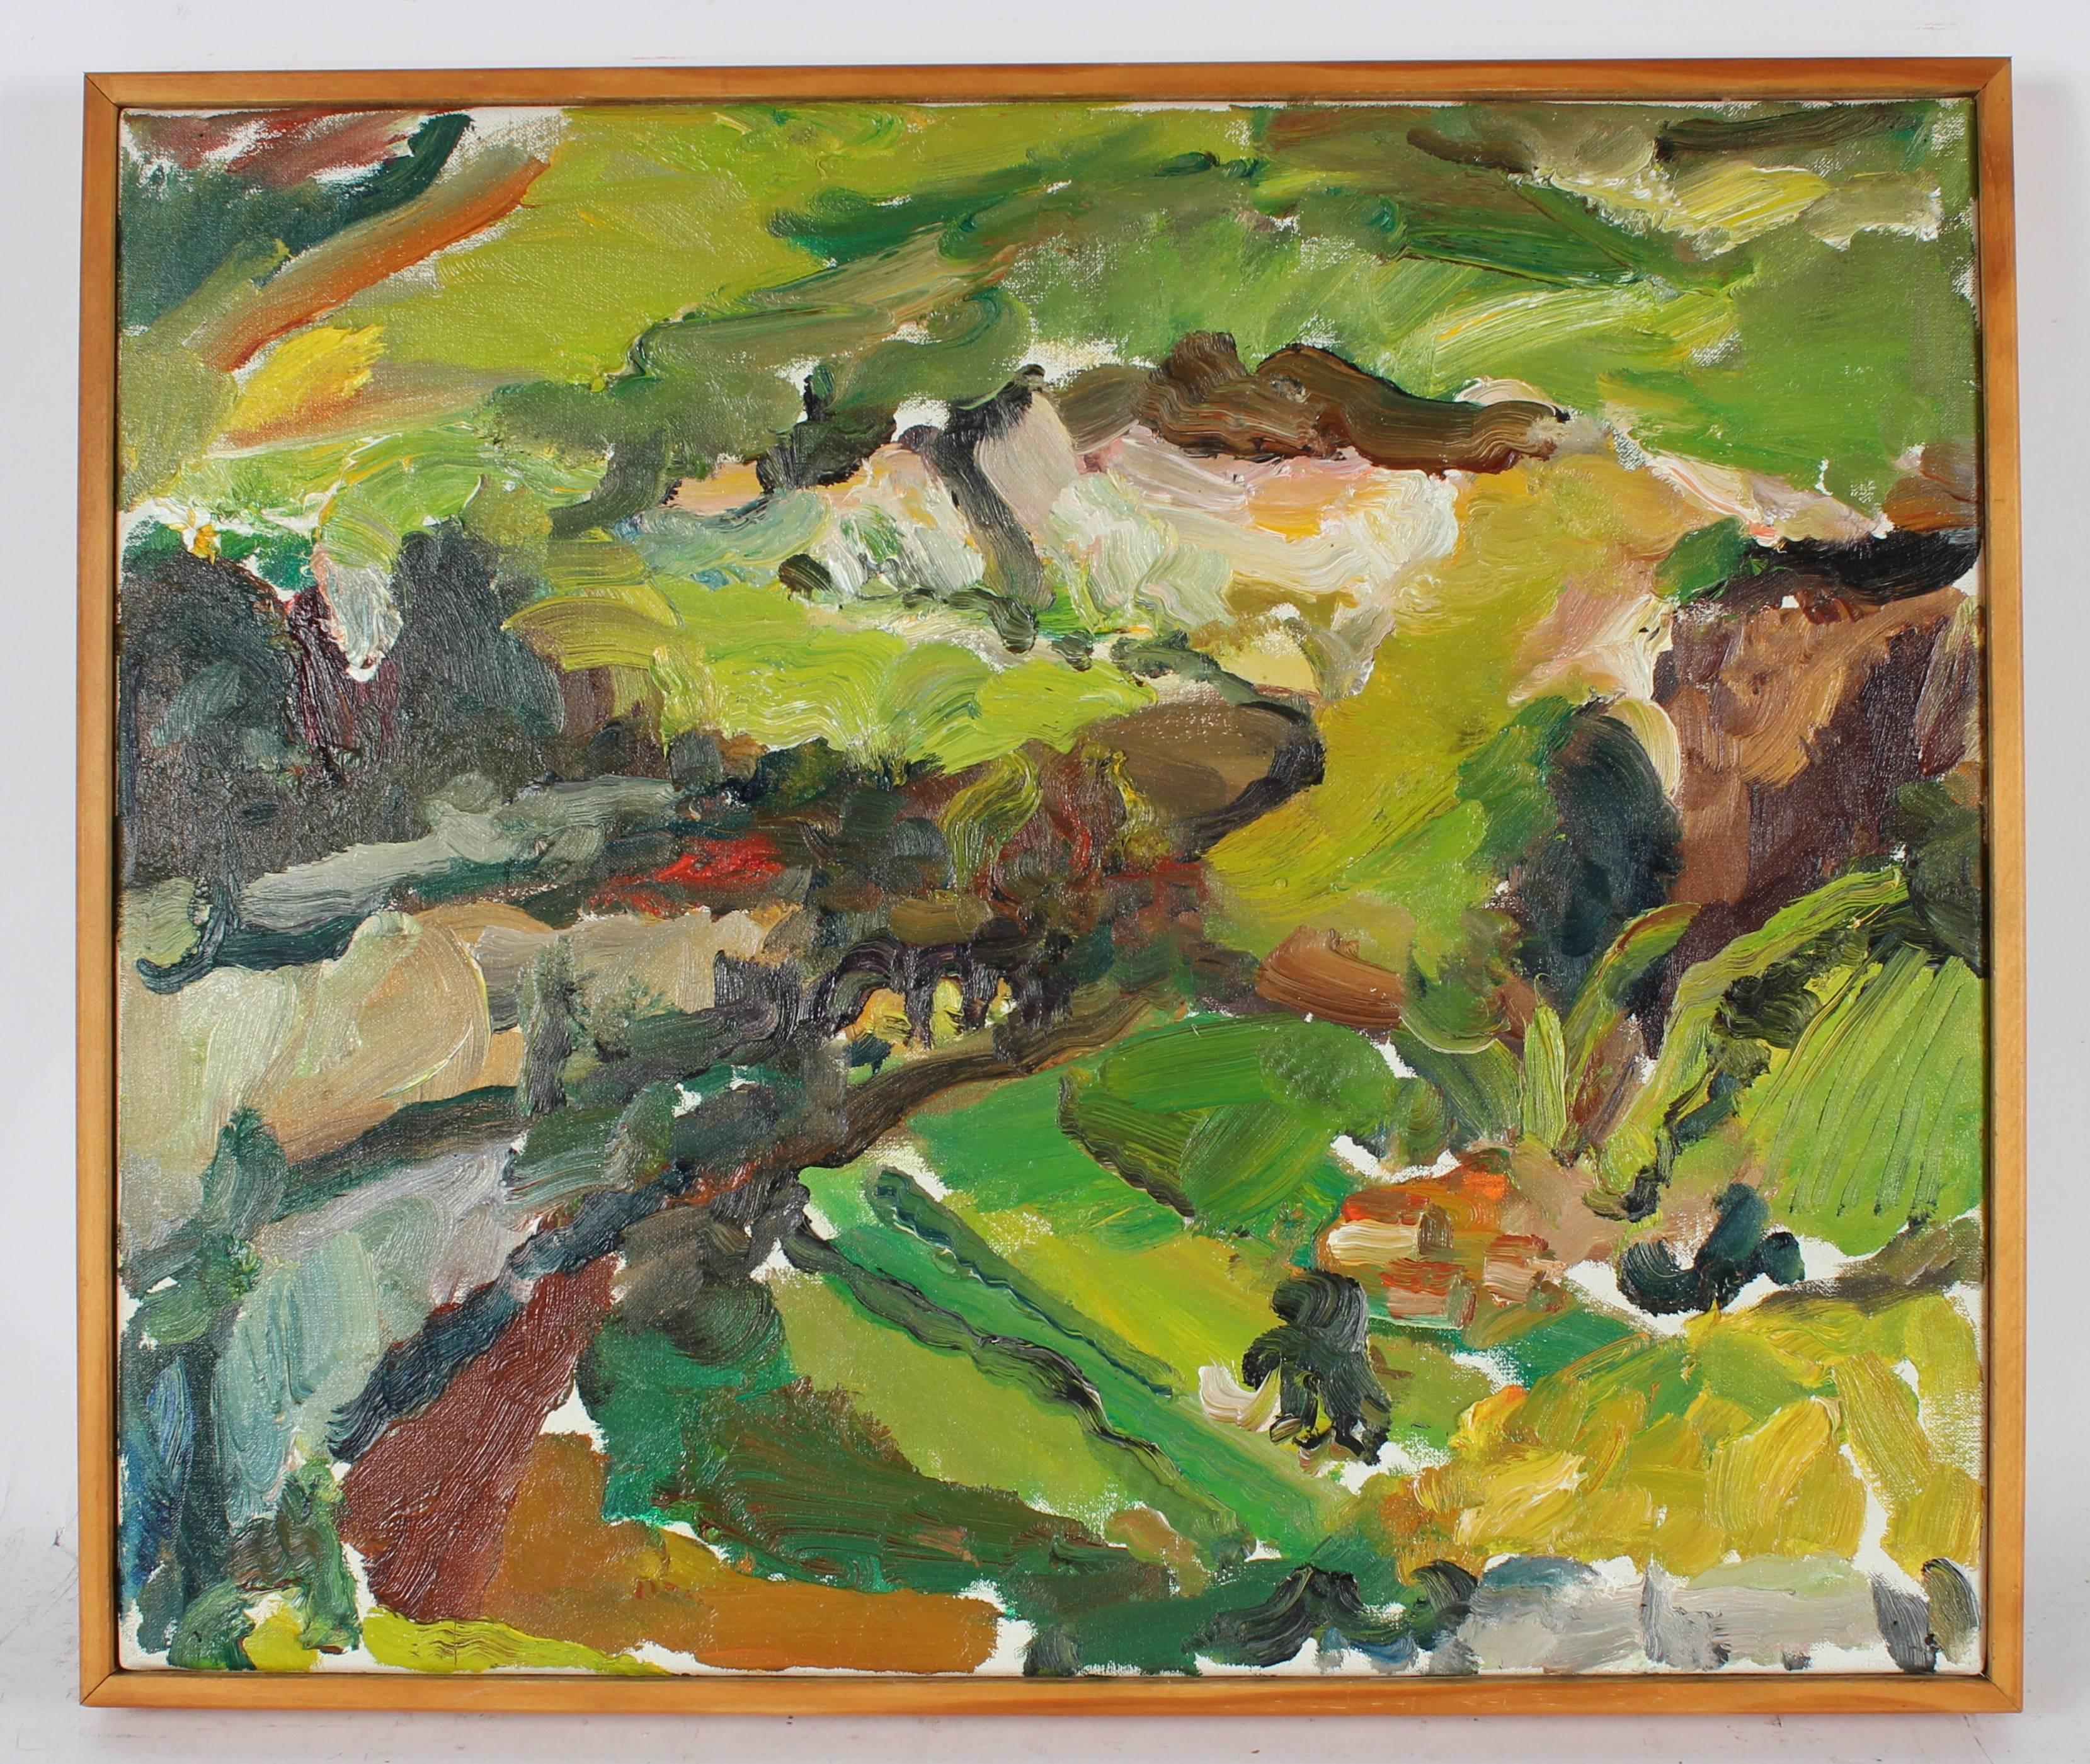 Jack Freeman Landscape Painting - "Le Lot Cut Study, Afternoon" Landscape Oil Painting, 2009